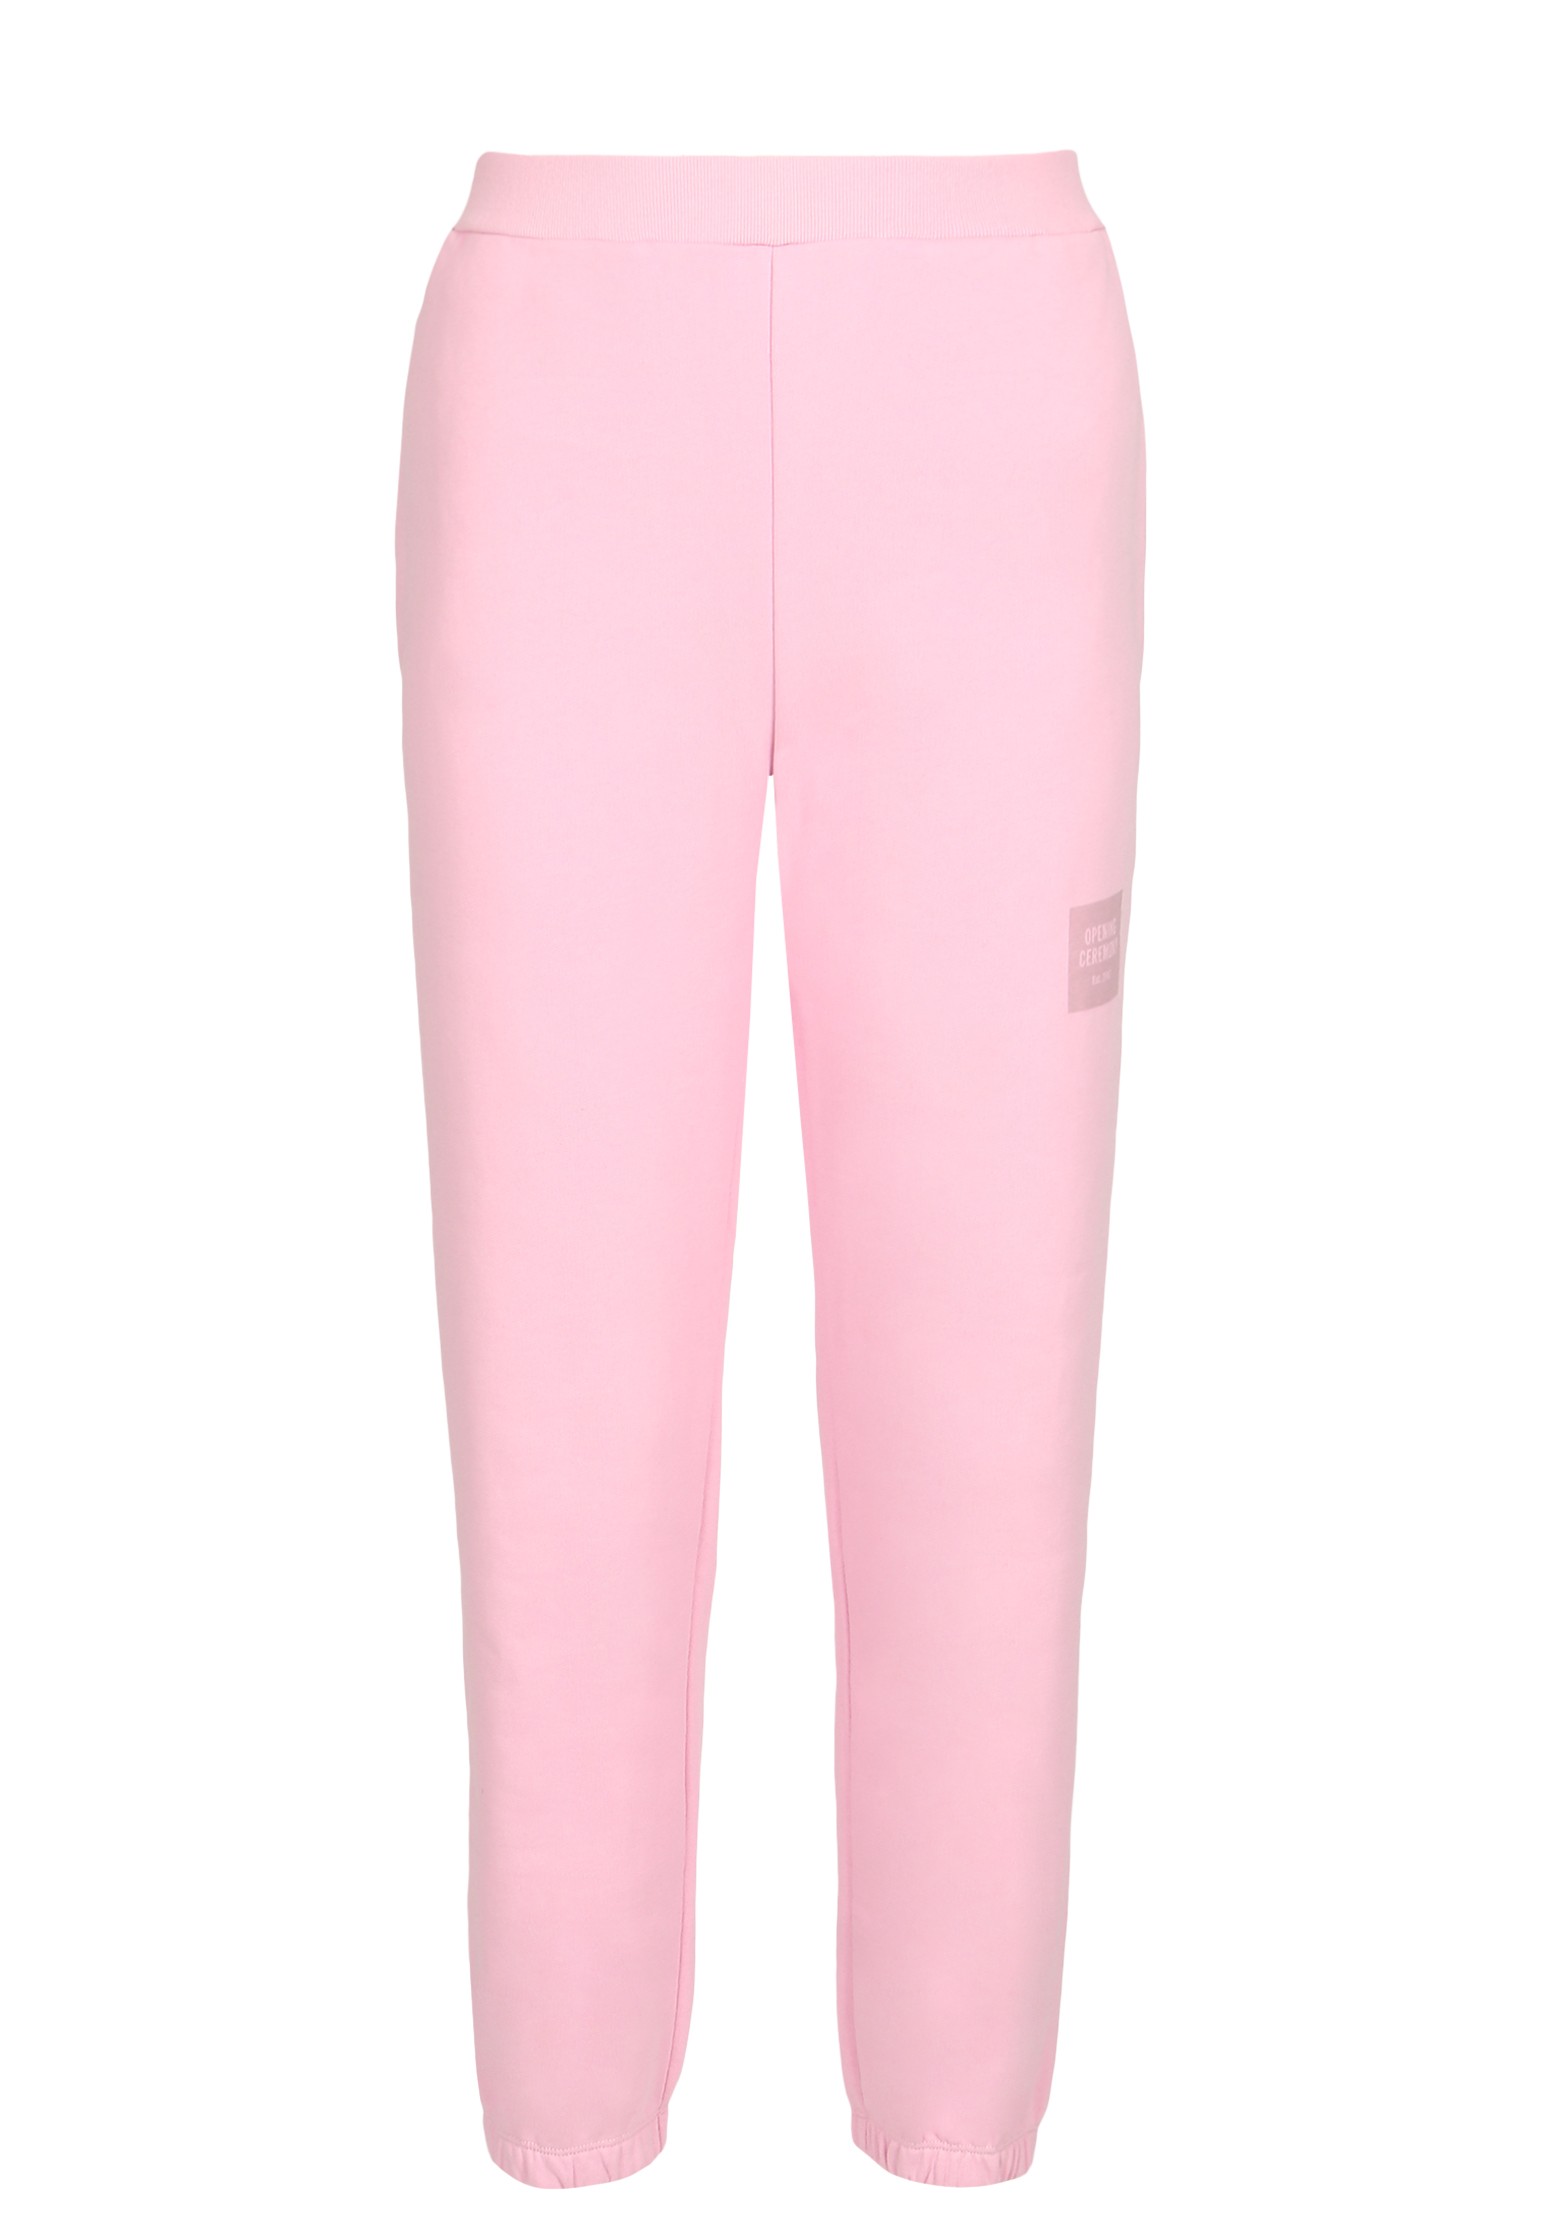 Спортивные брюки женские OPENING CEREMONY 136269 розовые S